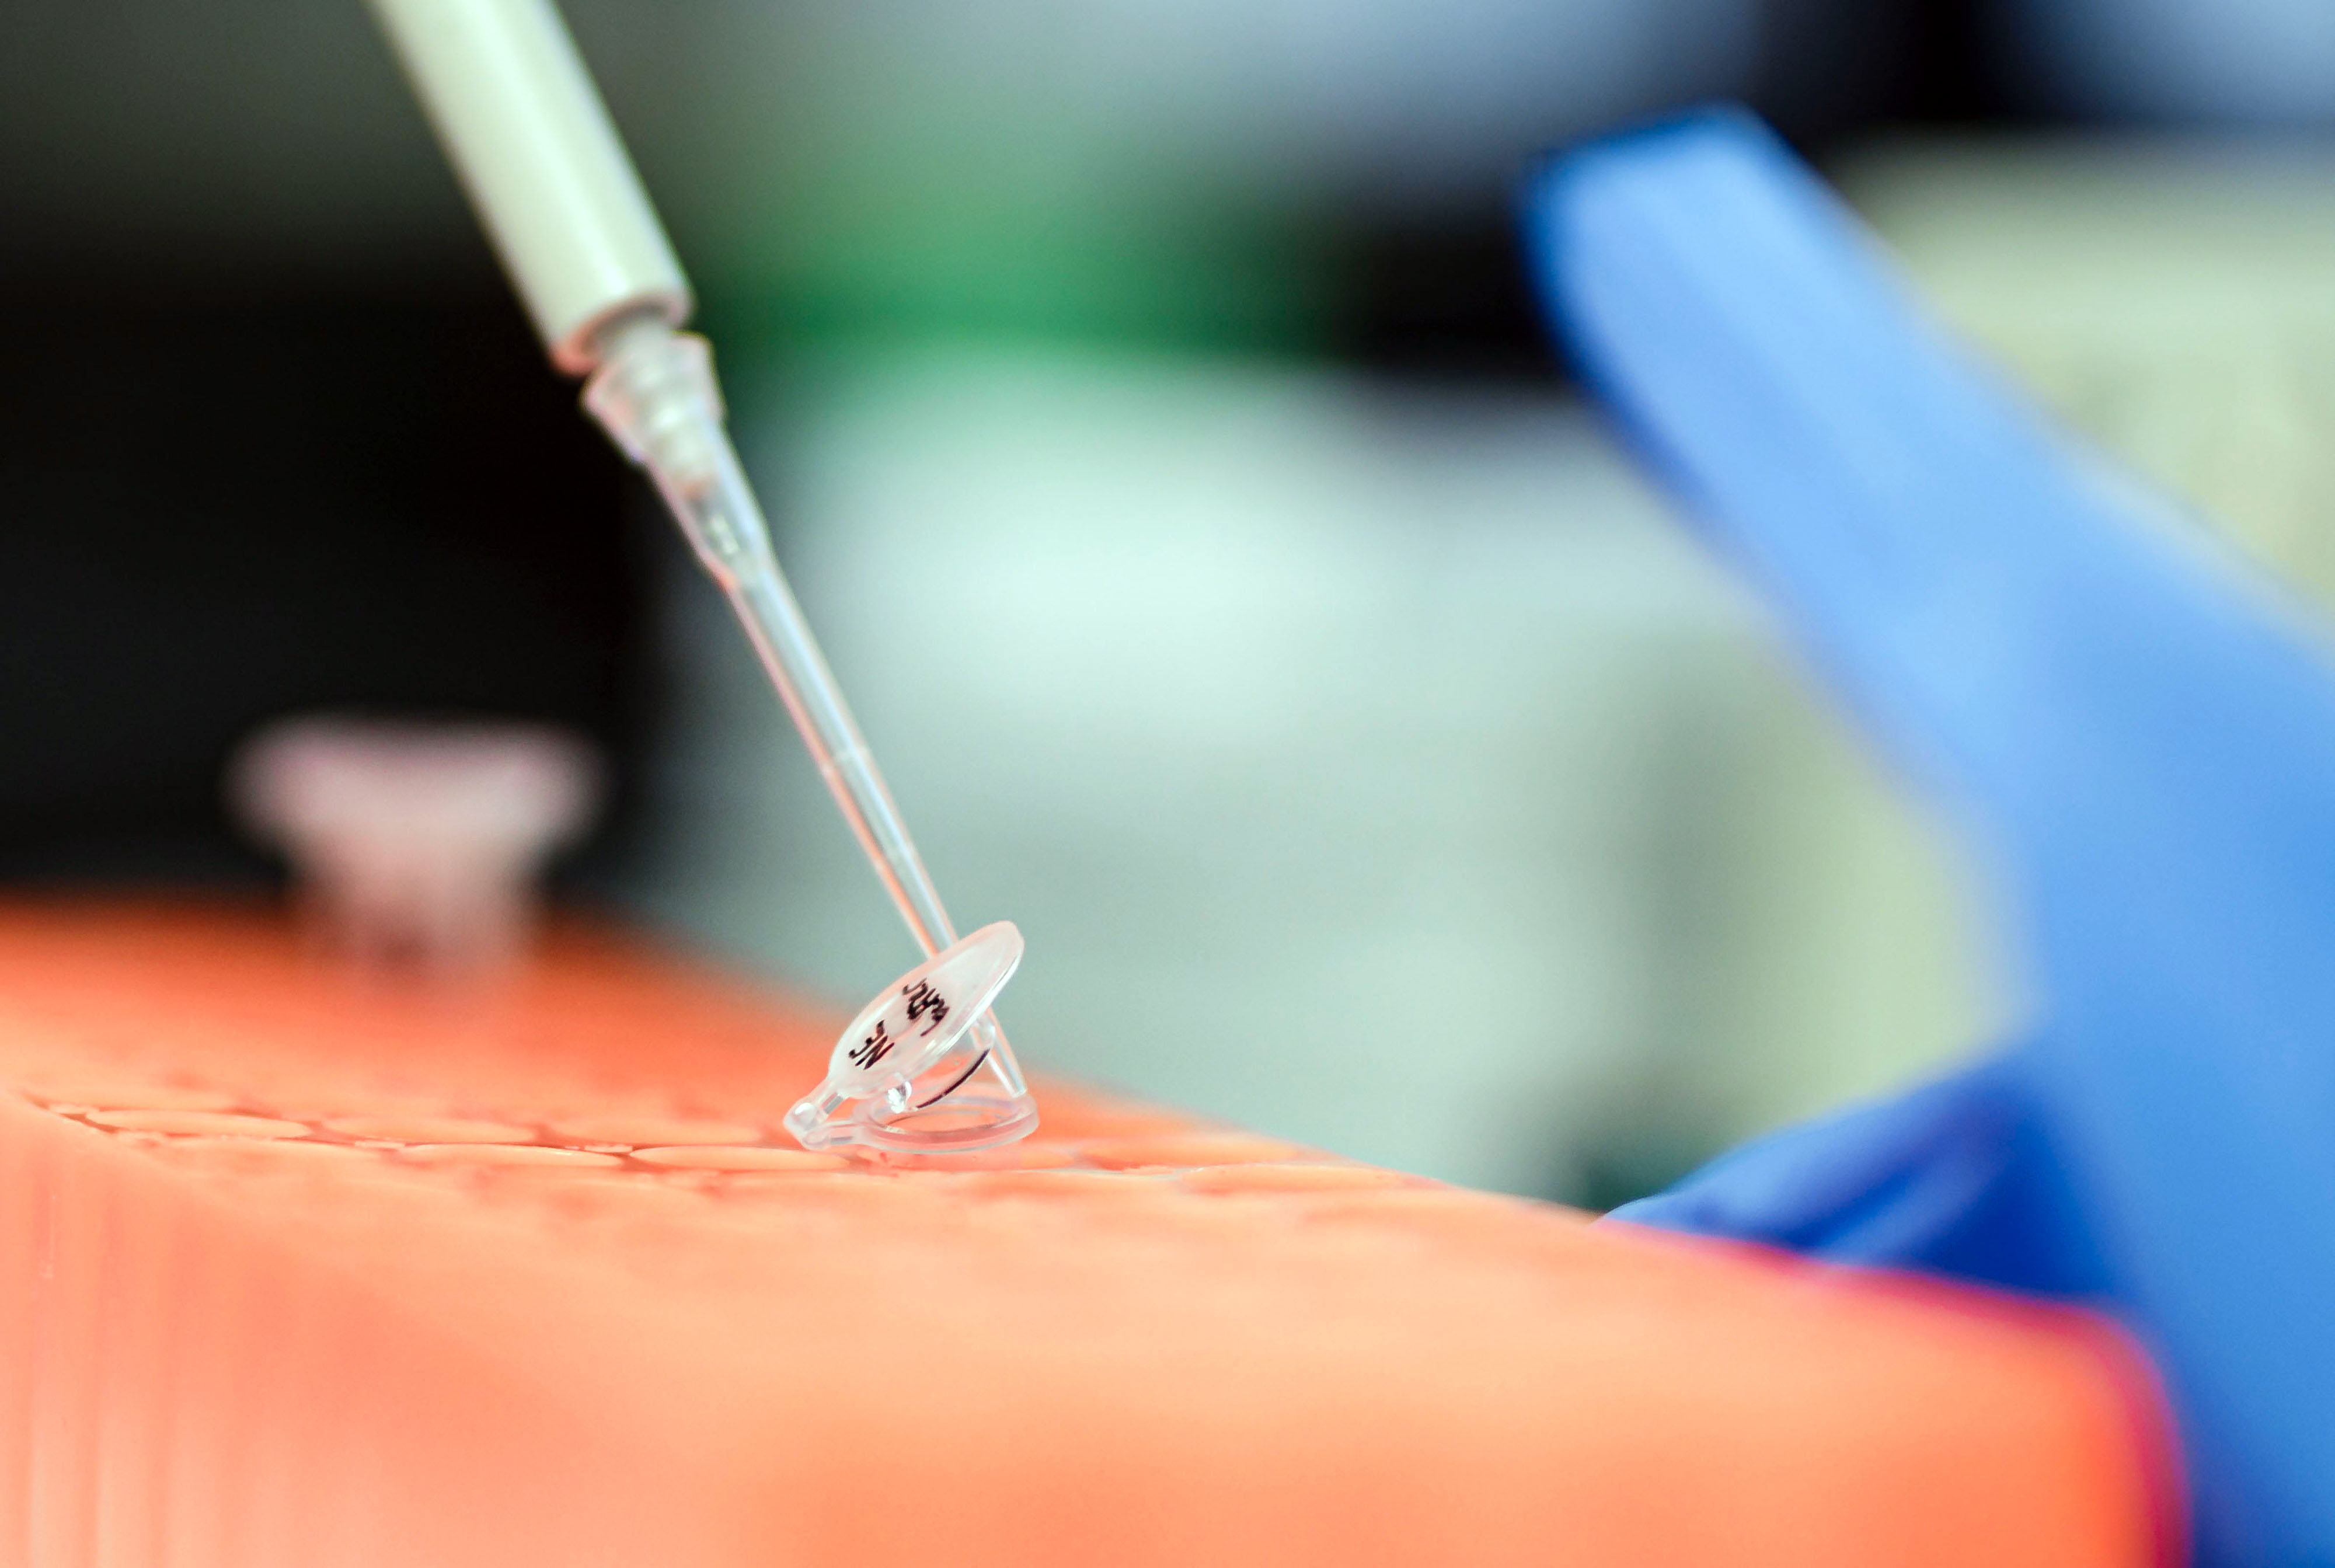 Laboruntersuchung einer Patientenprobe: Pipette und Probenröhrchen